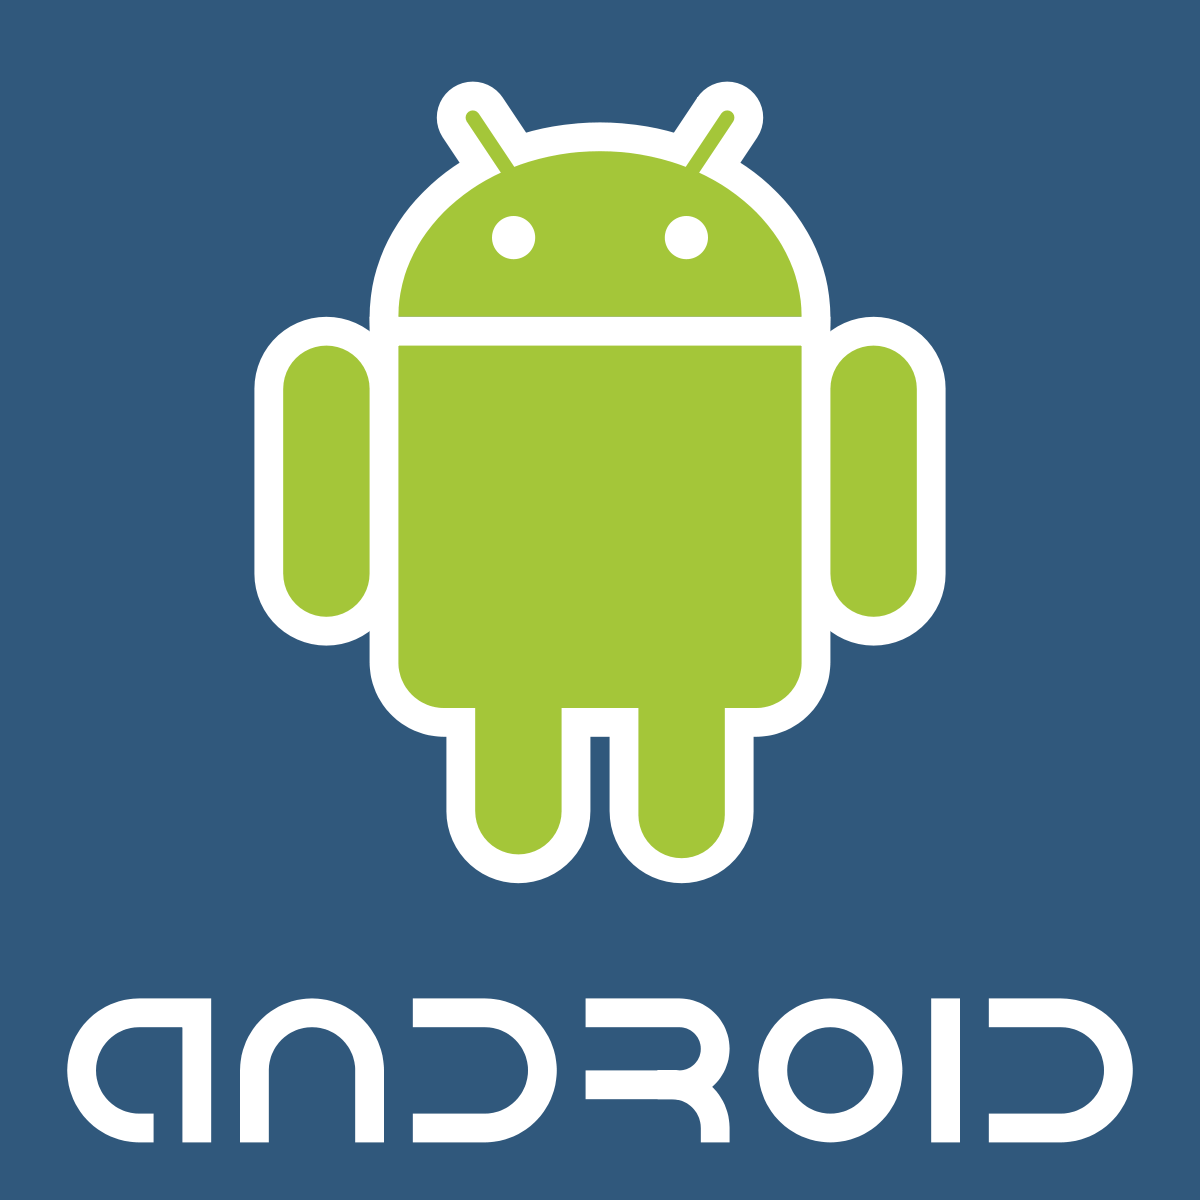 Android_logo_2 -อีมูเลเตอร์ที่โดดเด่นสำหรับพีซีระดับล่าง